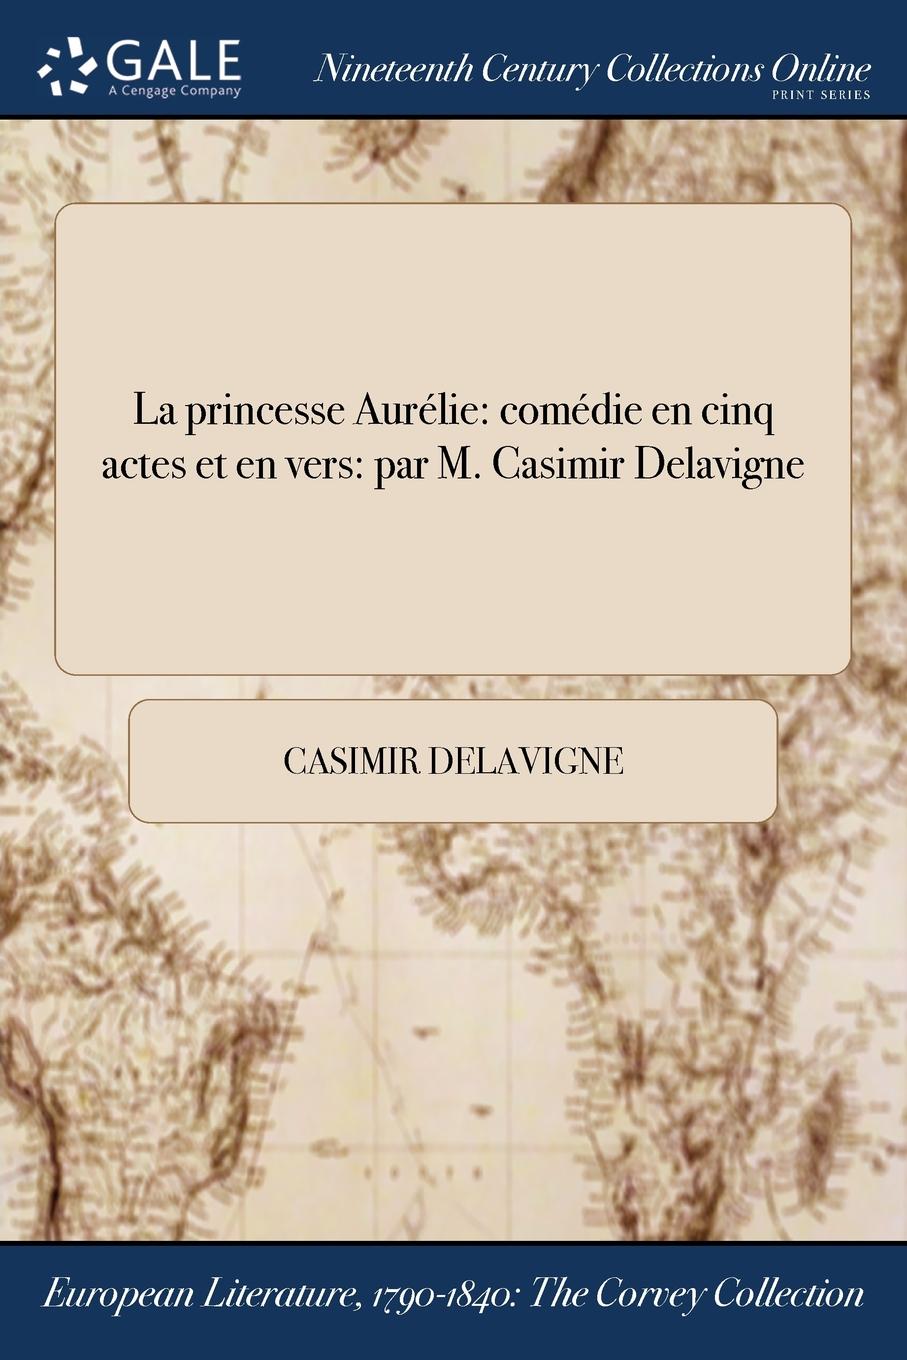 Casimir Delavigne La princesse Aurelie. comedie en cinq actes et en vers: par M. Casimir Delavigne